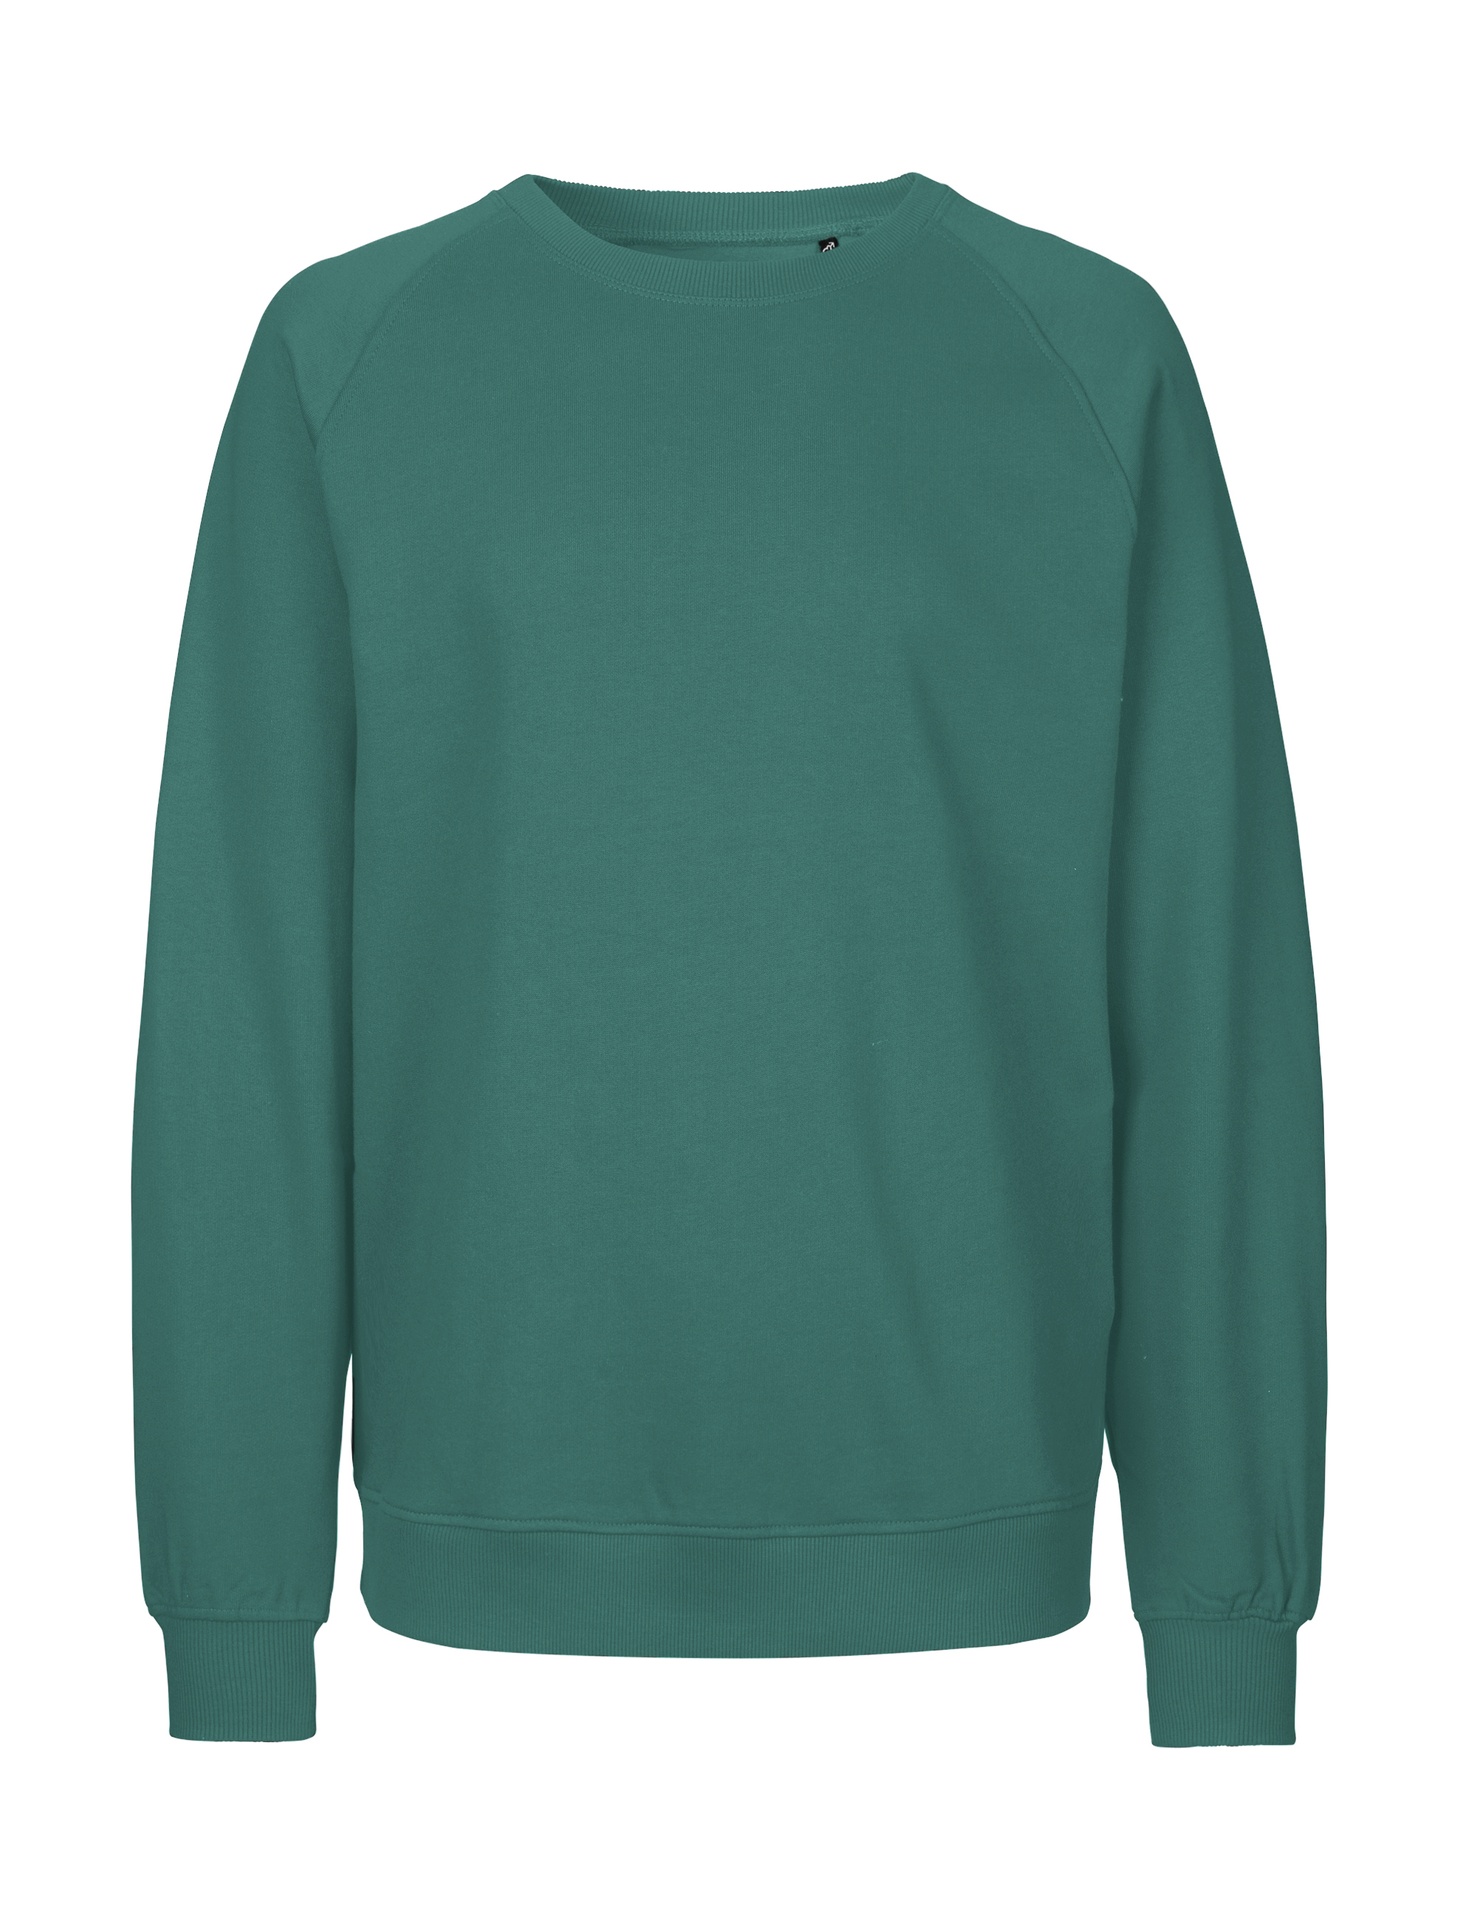 [PR/02868] Unisex Sweatshirt (Teal 52, XS)